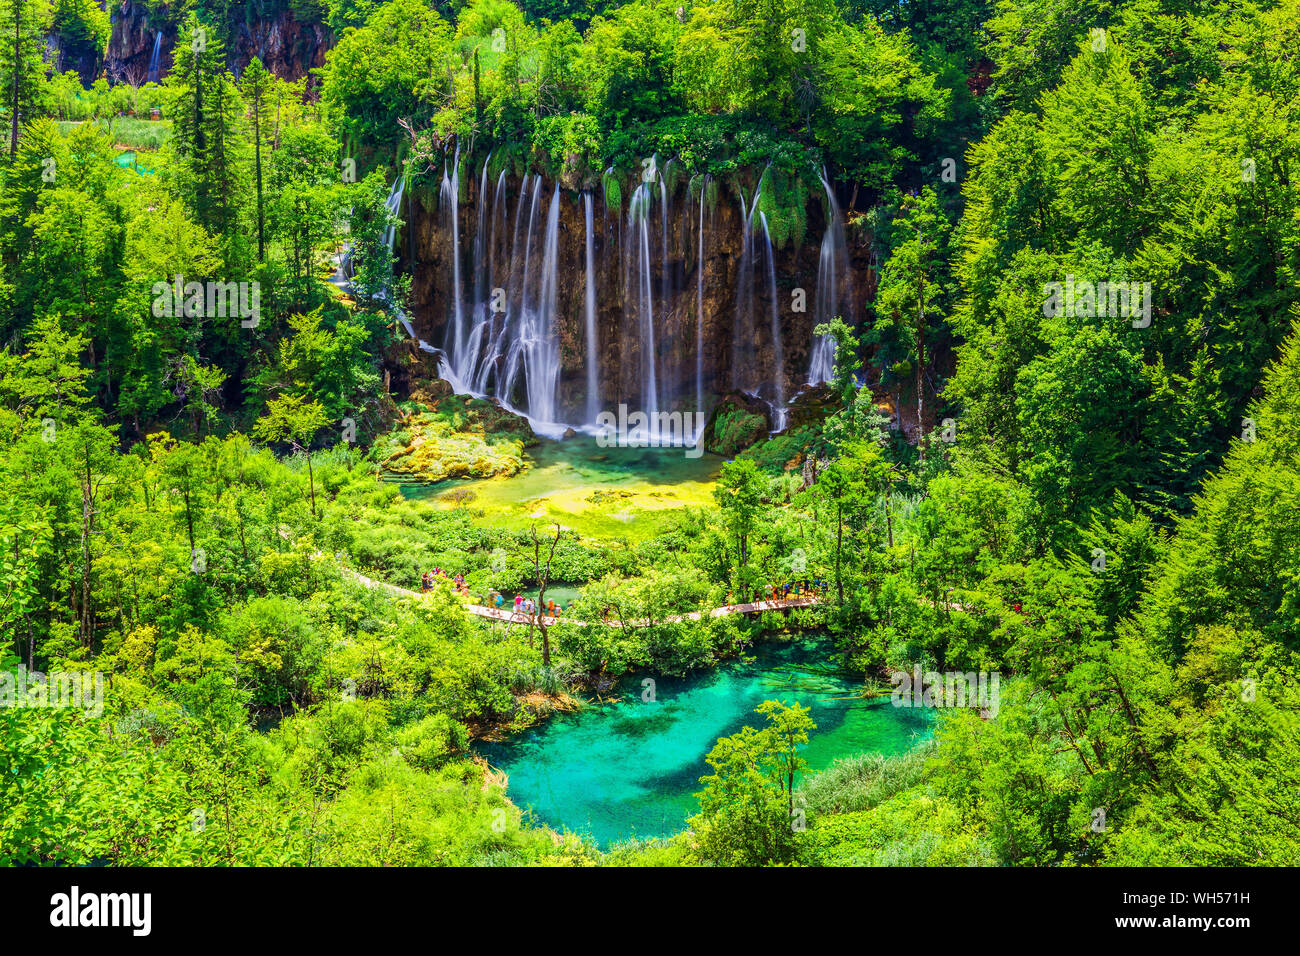 Les lacs de Plitvice, Croatie. Cascades de Plitvice Lakes National Park. Banque D'Images